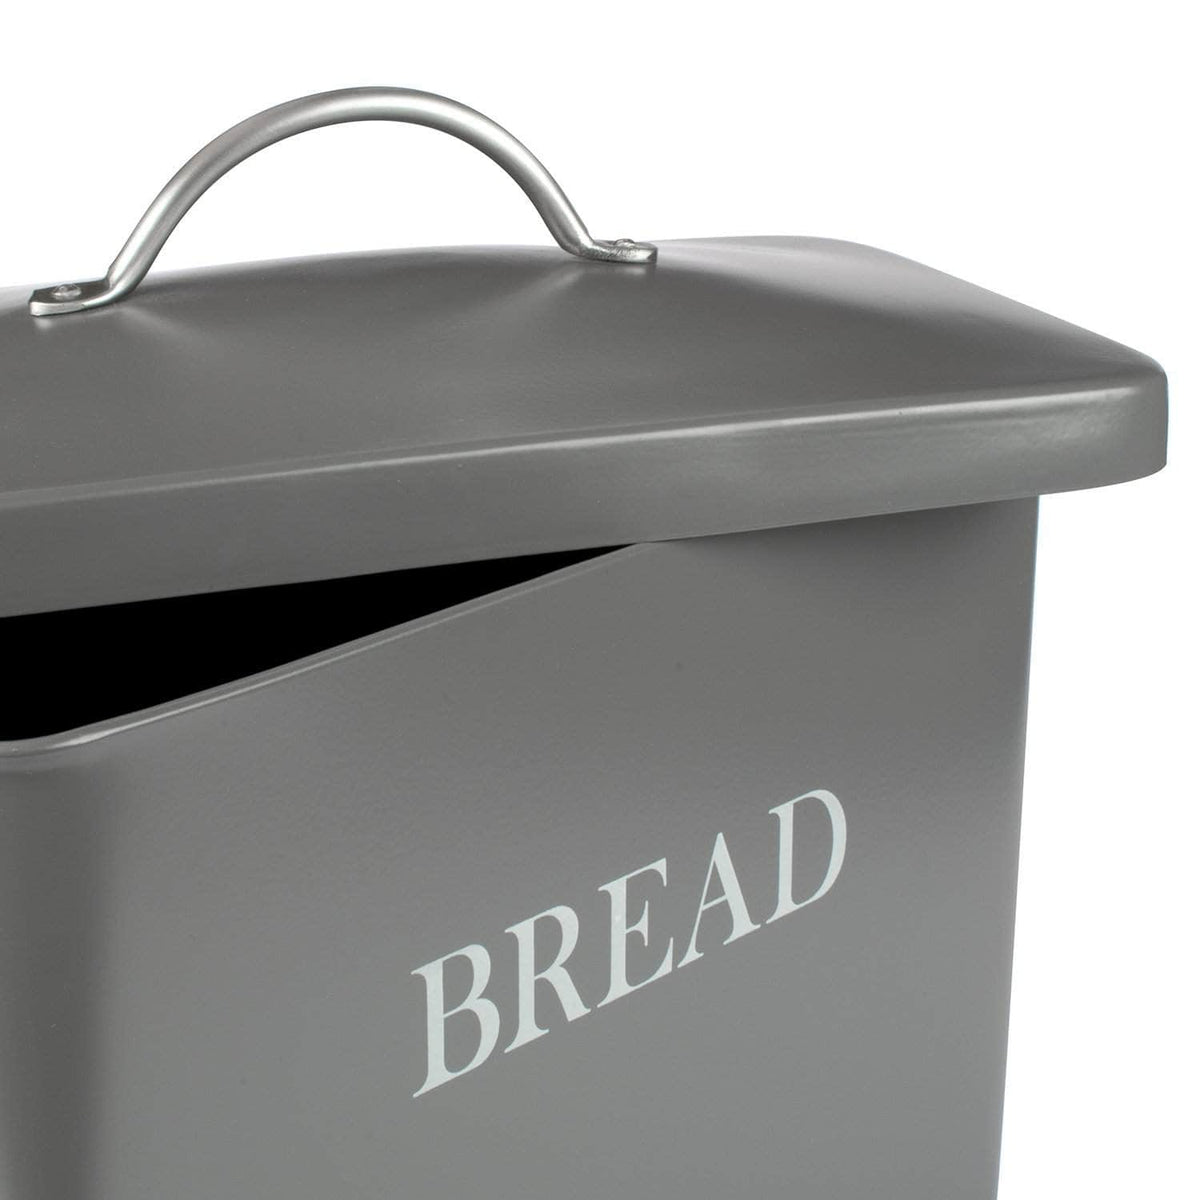 Steel bread bin in charcoal